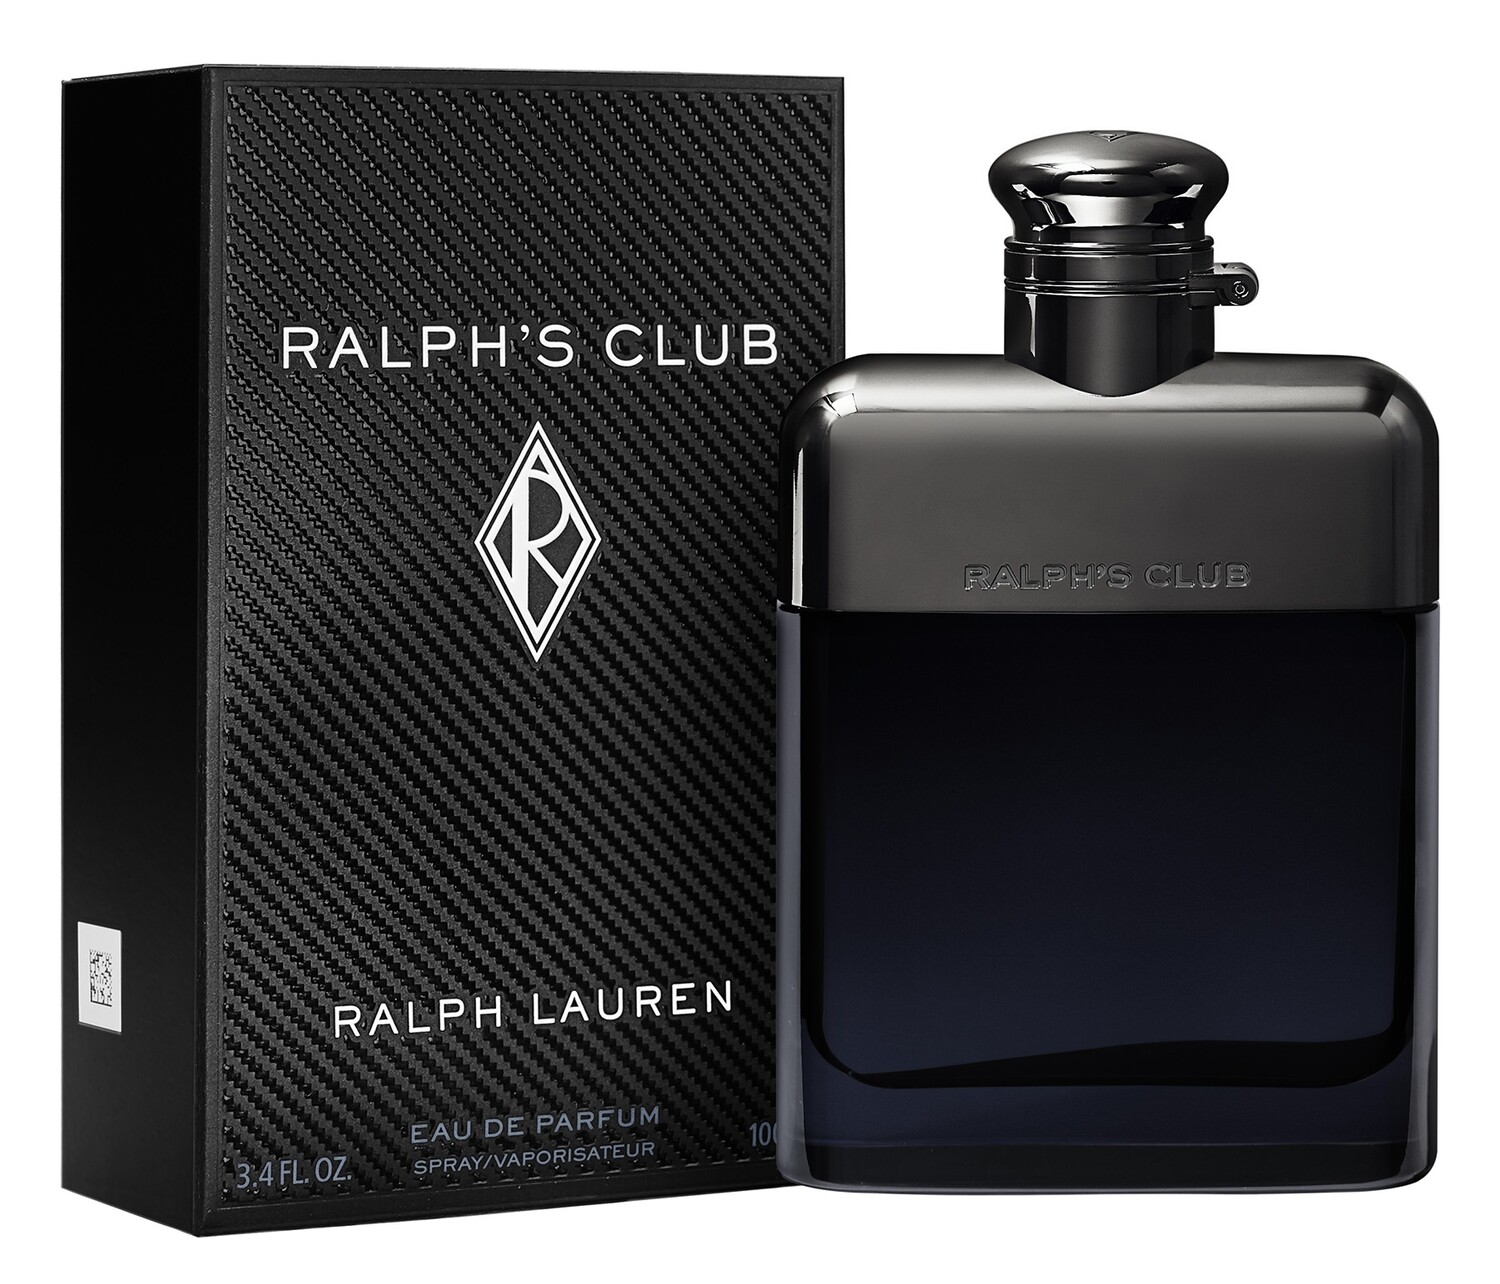 Ralph's Club - Ralph Lauren